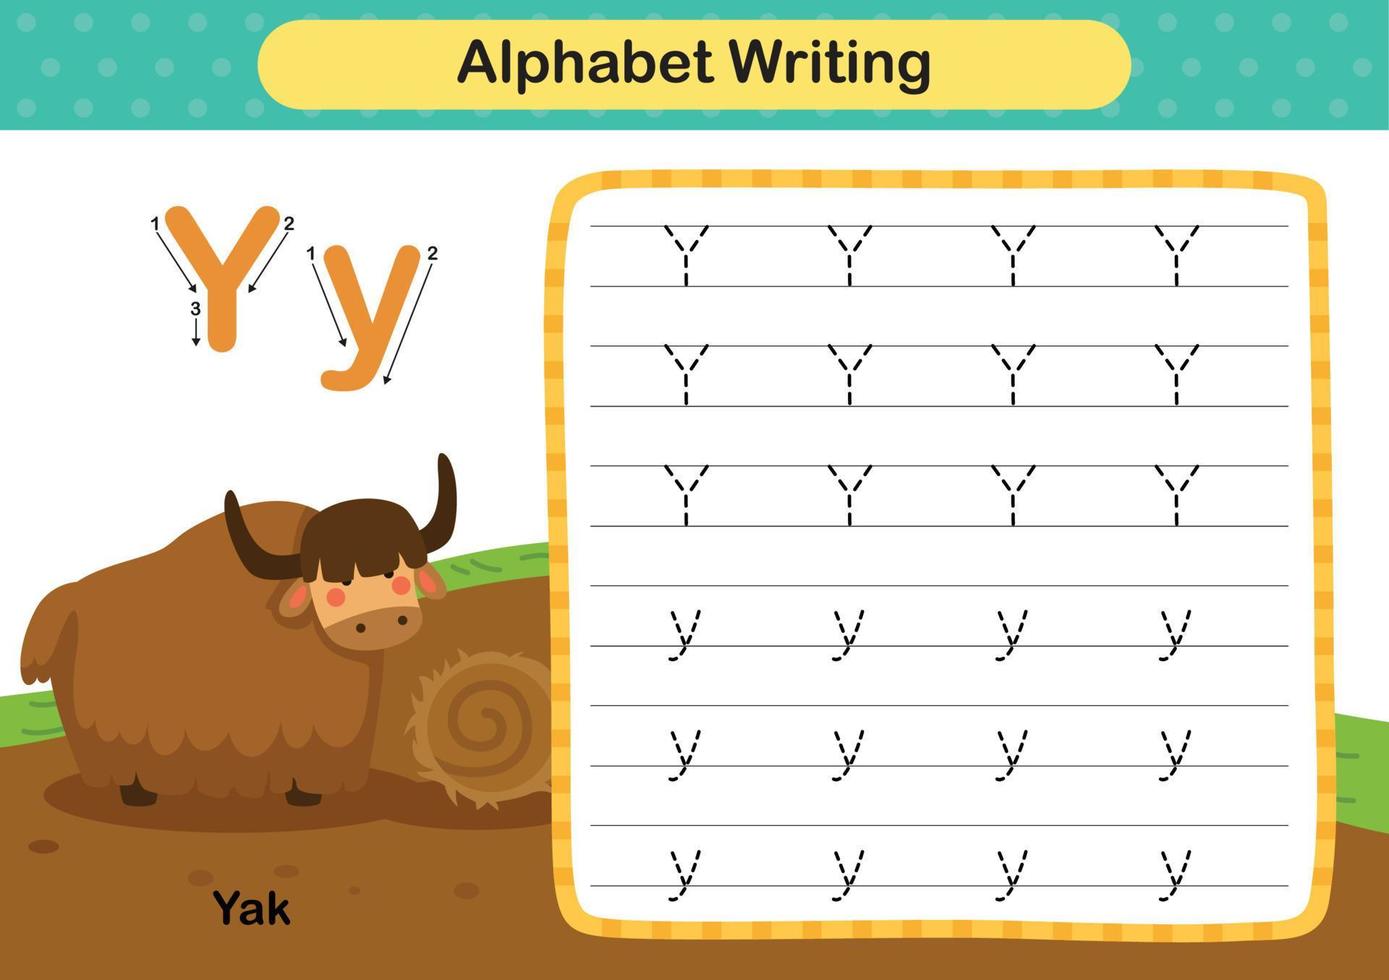 alfabetet bokstaven y - jak övning med tecknad ordförråd illustration, vektor